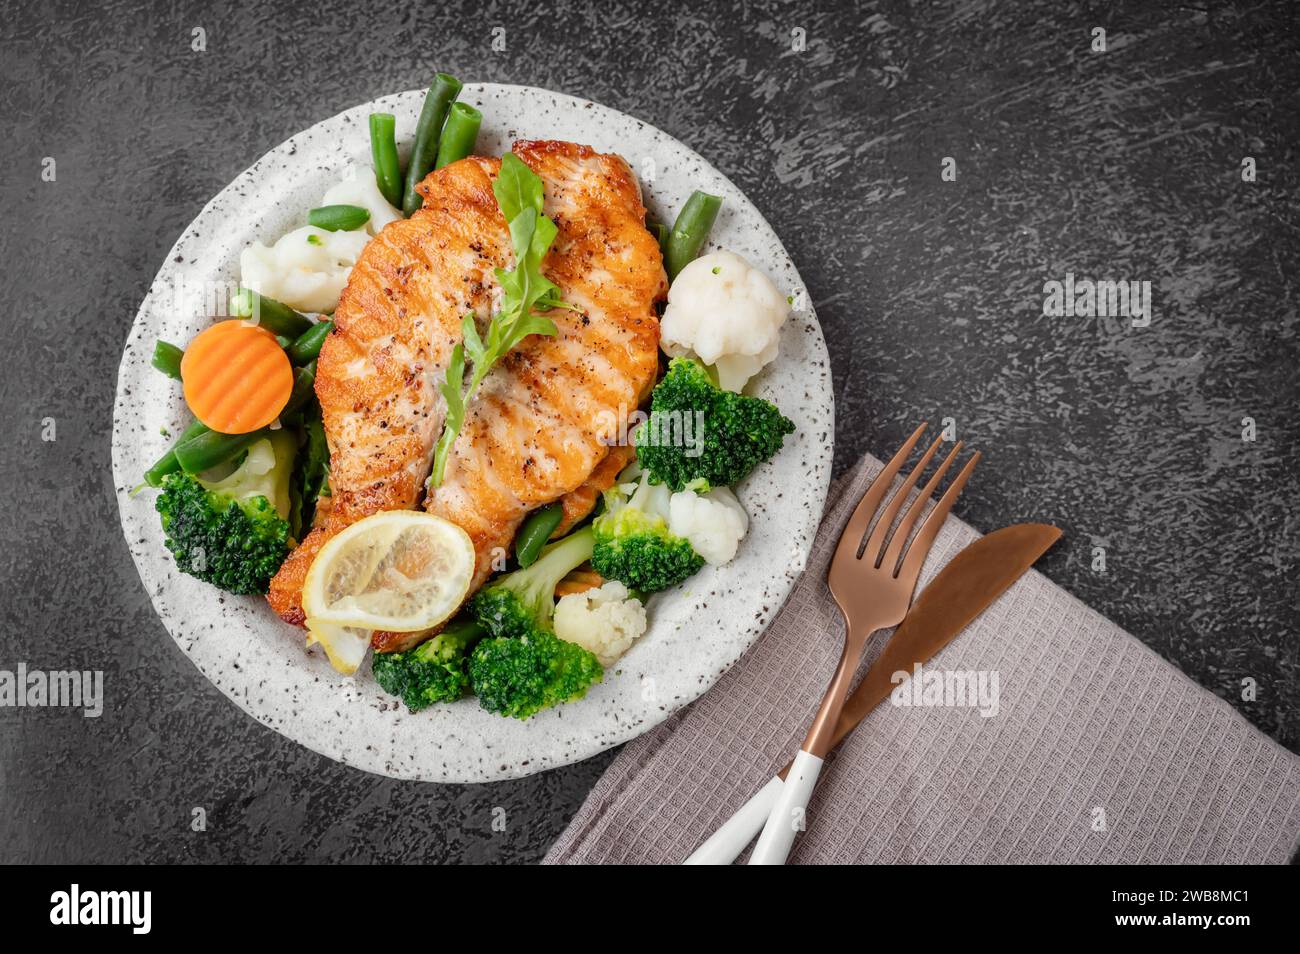 Lachssteak mit Gemüse Blumenkohl, Brokkoli, Karotten und grünen Bohnen. Salat aus Rucola und Gemüse mit Lachs. Draufsicht, flach Stockfoto